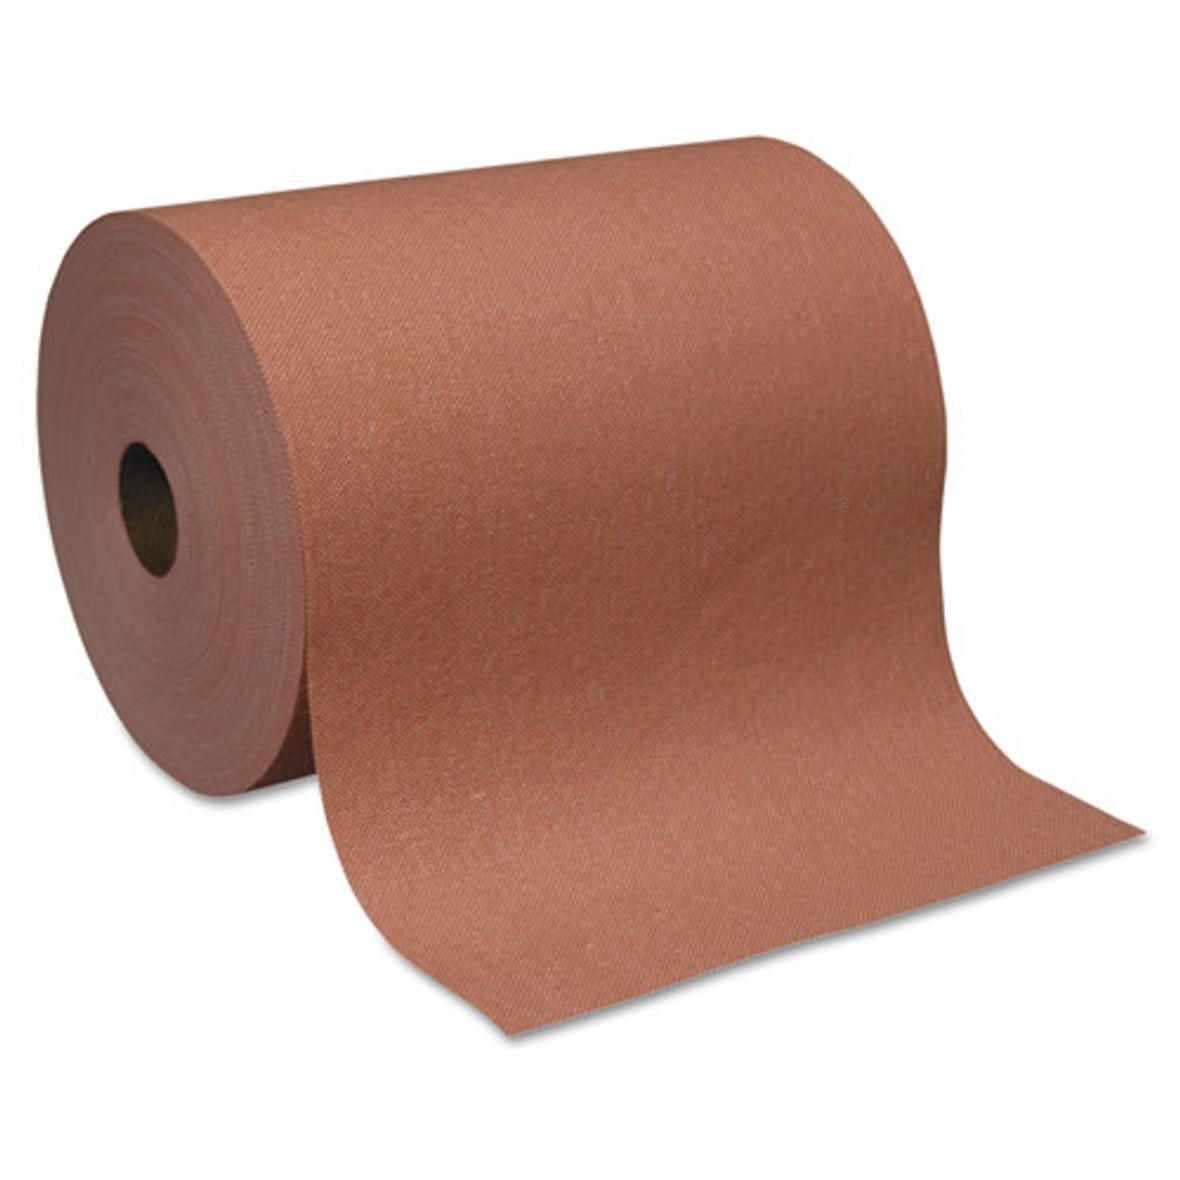 Gorag Premium All-purpose Drc Roll Wipers, Orange, 10 X 250', 6/carton